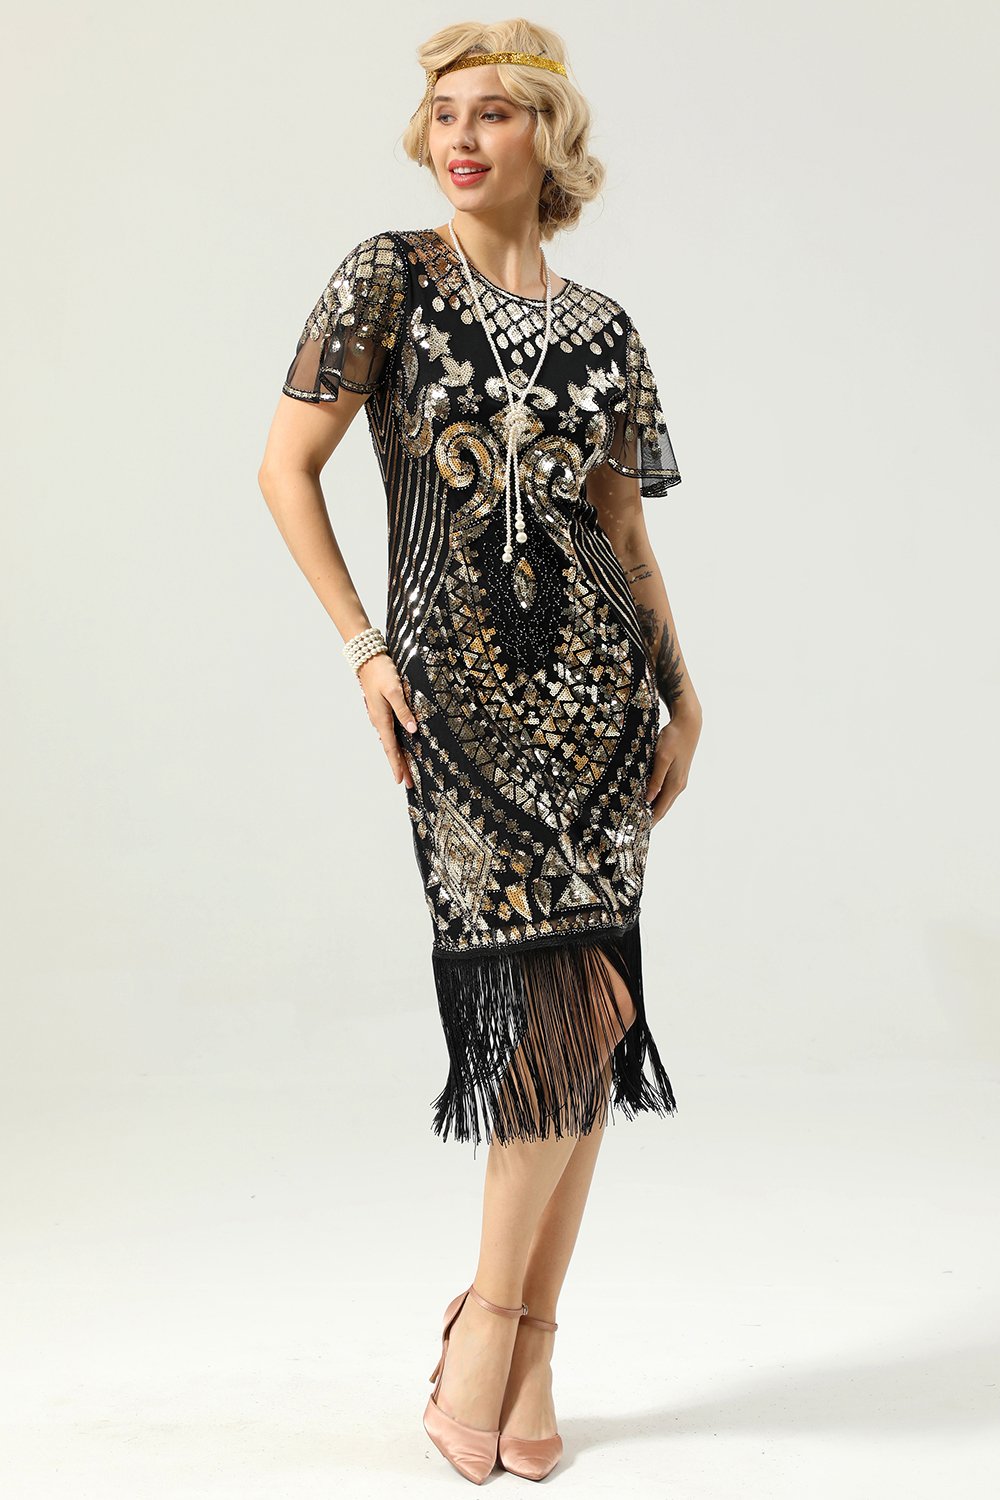 Schwarz und Gold Pailletten 20er Kleid mit Batwing Ärmeln